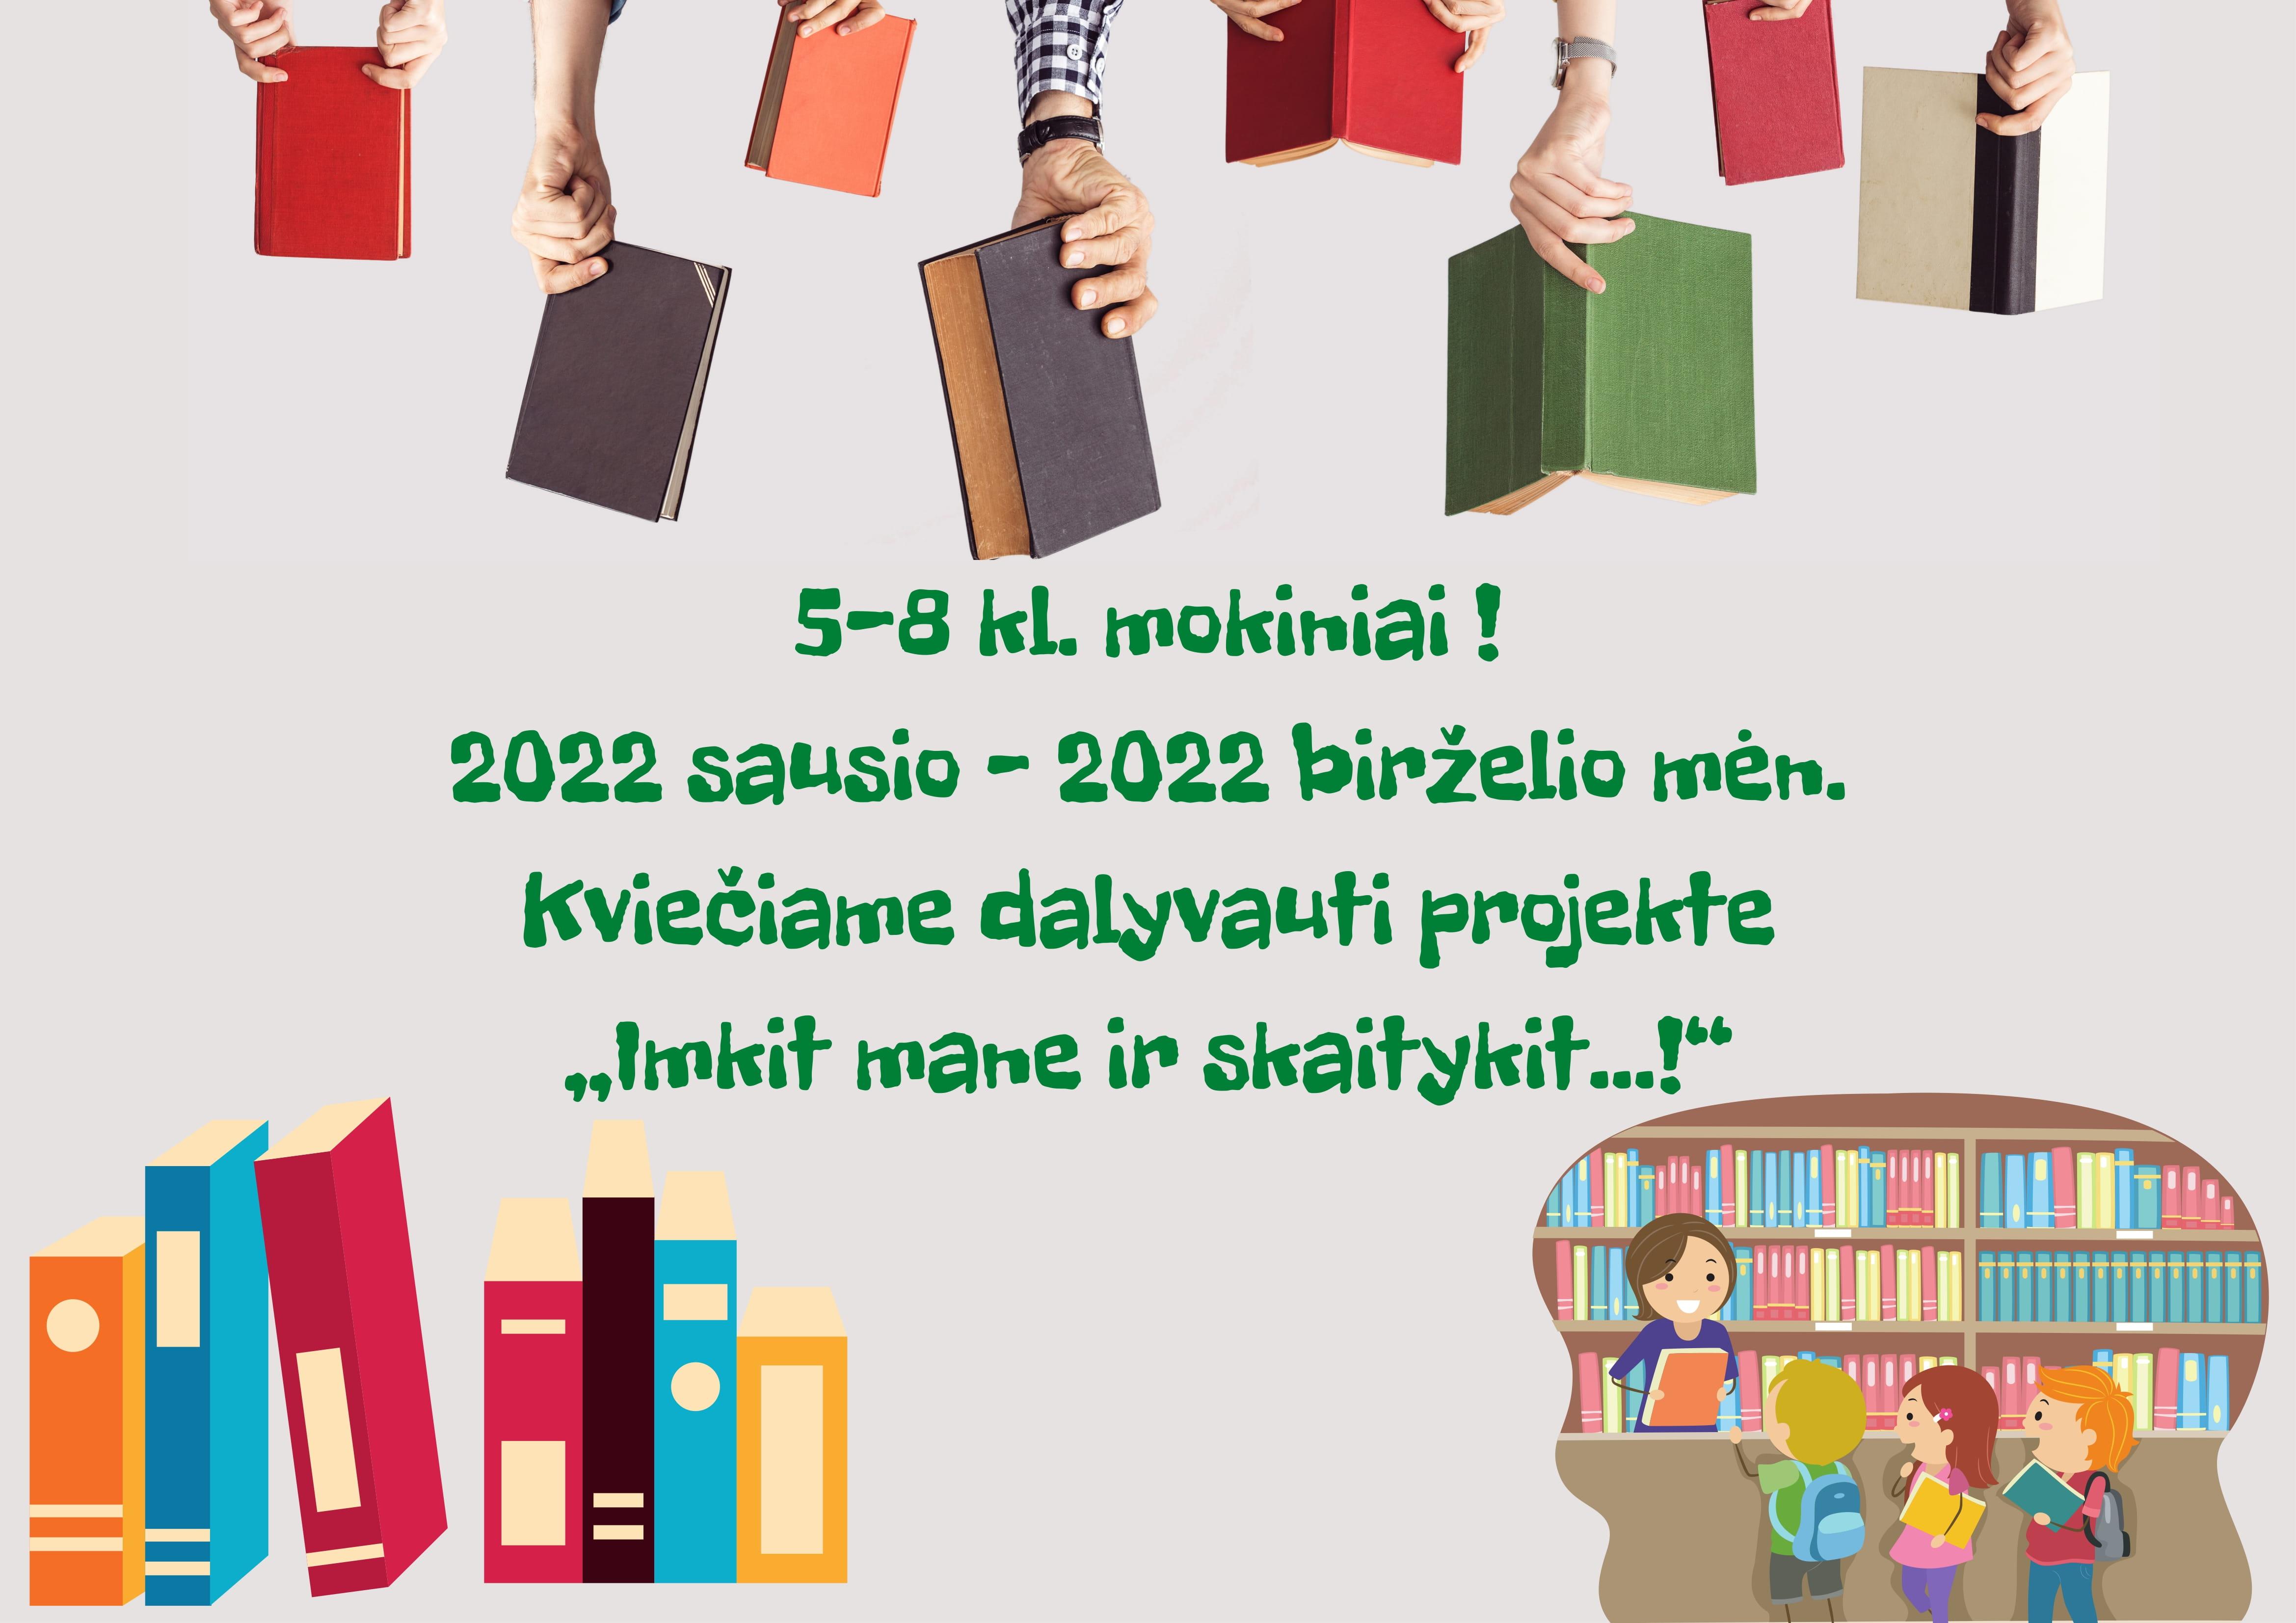 5-8 kl. mokiniai, 2022 sausio – 2022 birželio mėn. Kviečiame dalyvauti projekte ,,Imkit mane ir skaitykit...!“ (3)-1